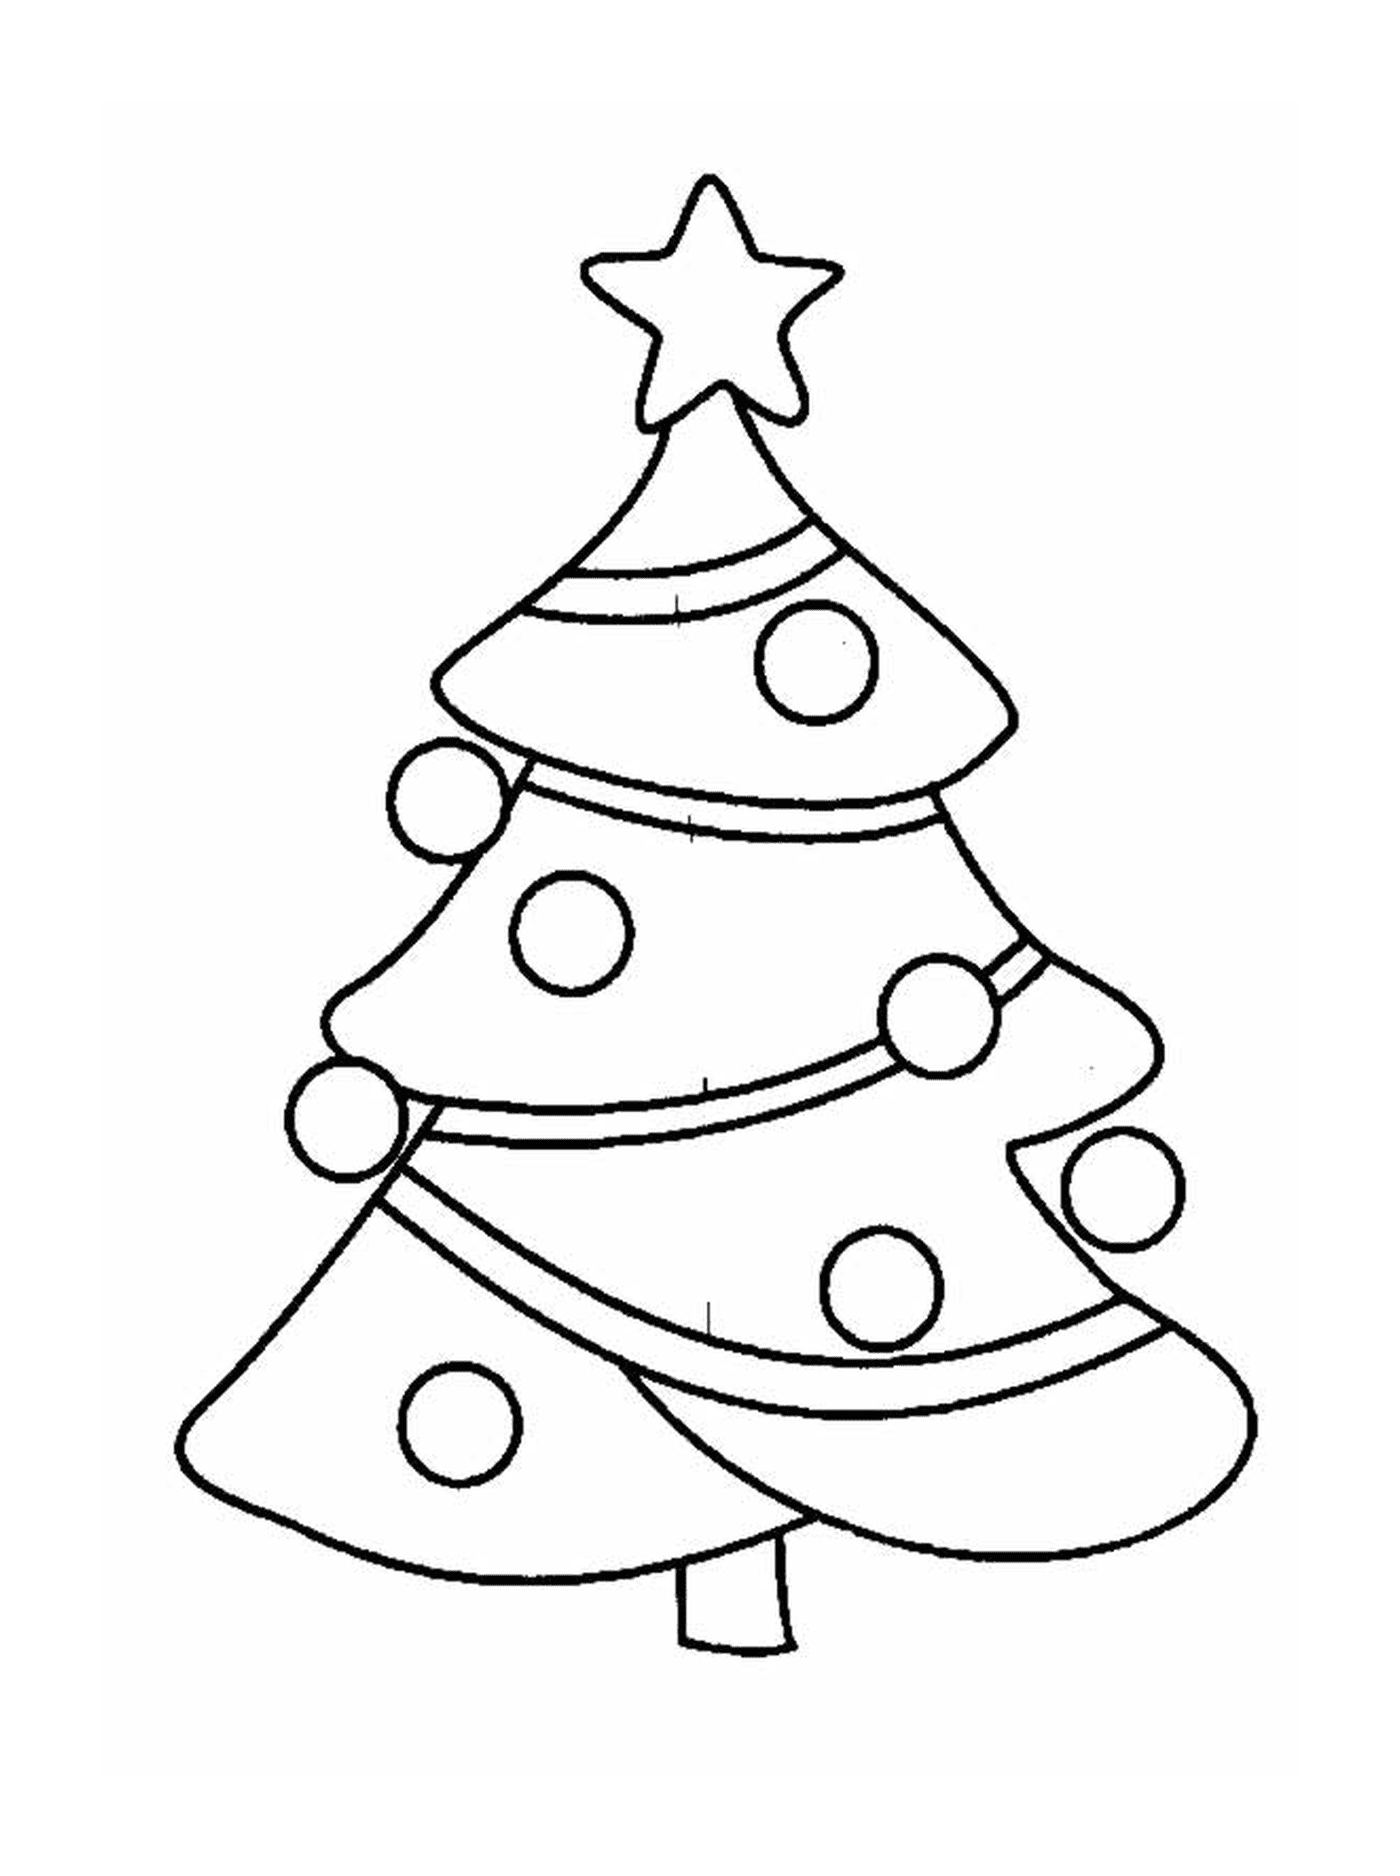  Ein Weihnachtsbaum mit Ornamenten an der Spitze 